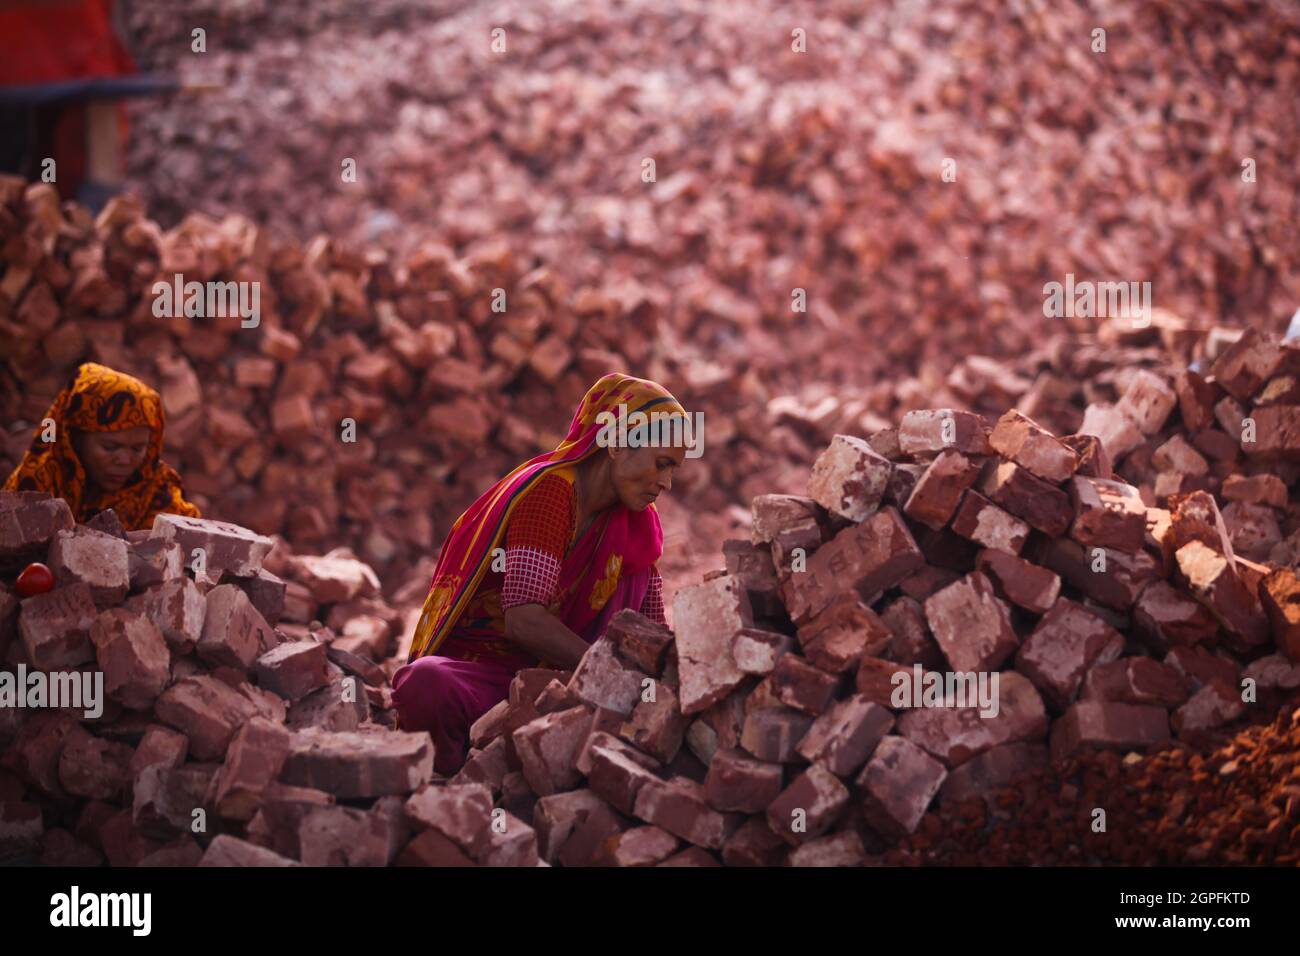 Les femmes bangladaises travaillent dans un chantier de briques à l'intérieur de la rivière Turag, dans la région d'Aminbazar, à Dhaka, le 15 mars 2020. Banque D'Images